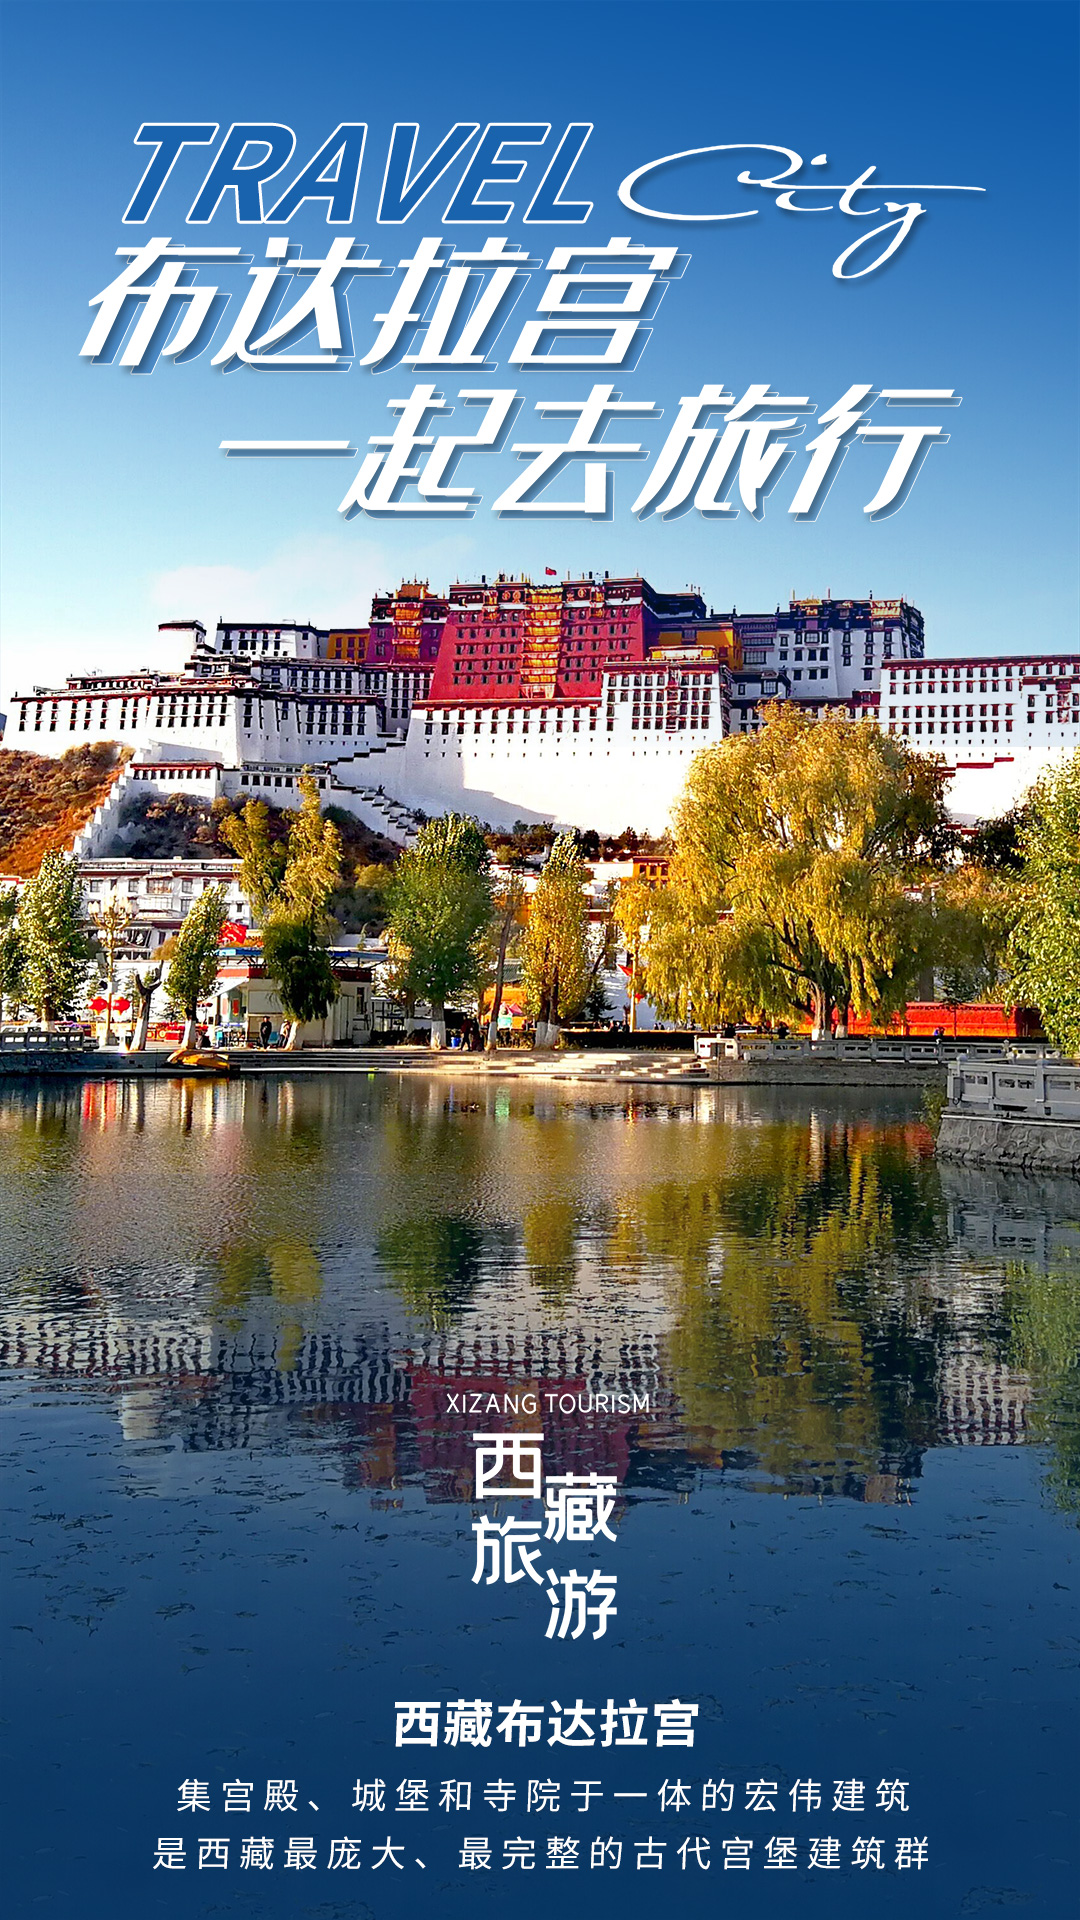 藏行纪西藏旅游海报psd广告设计素材海报模板免费下载